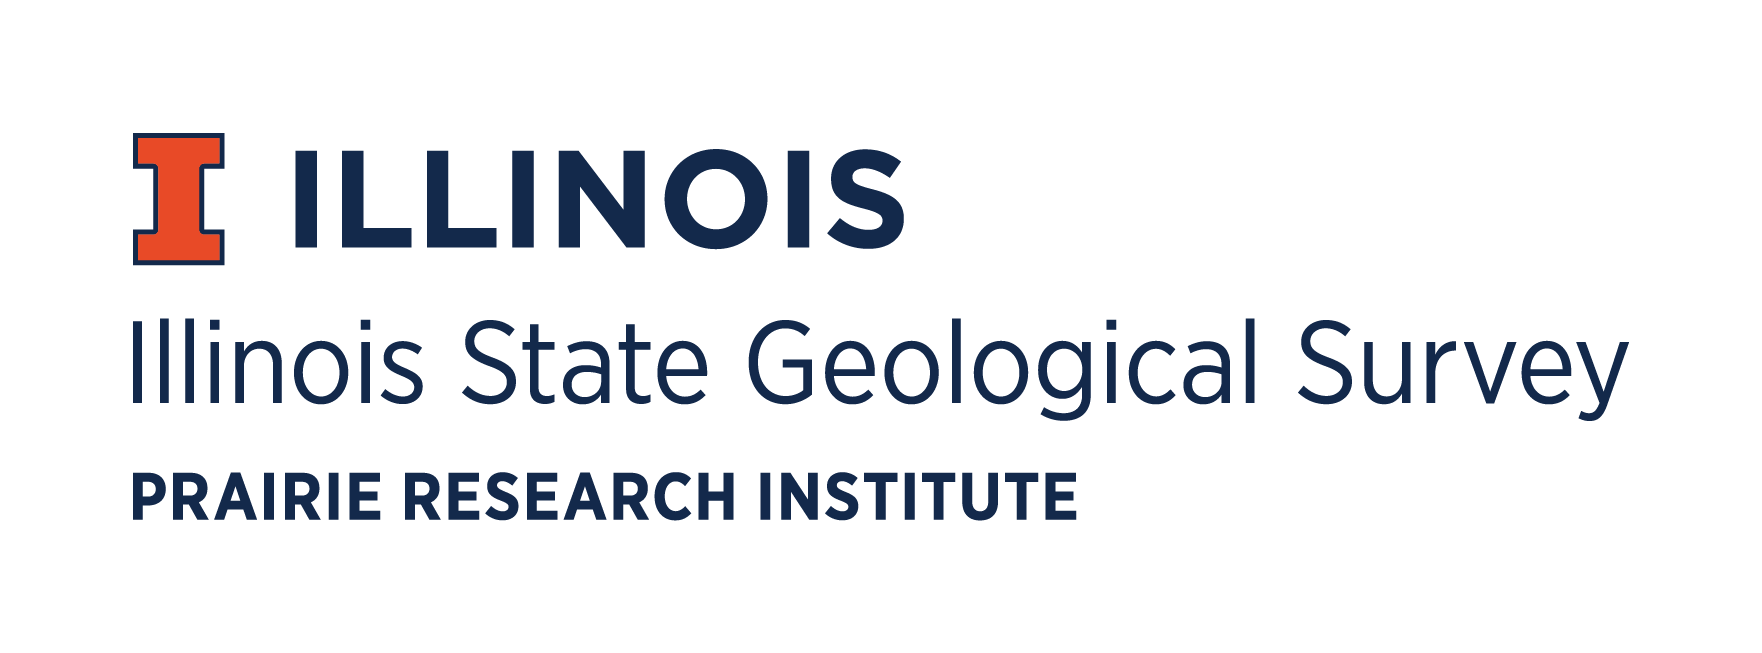 Illinois State Geological Survey logo